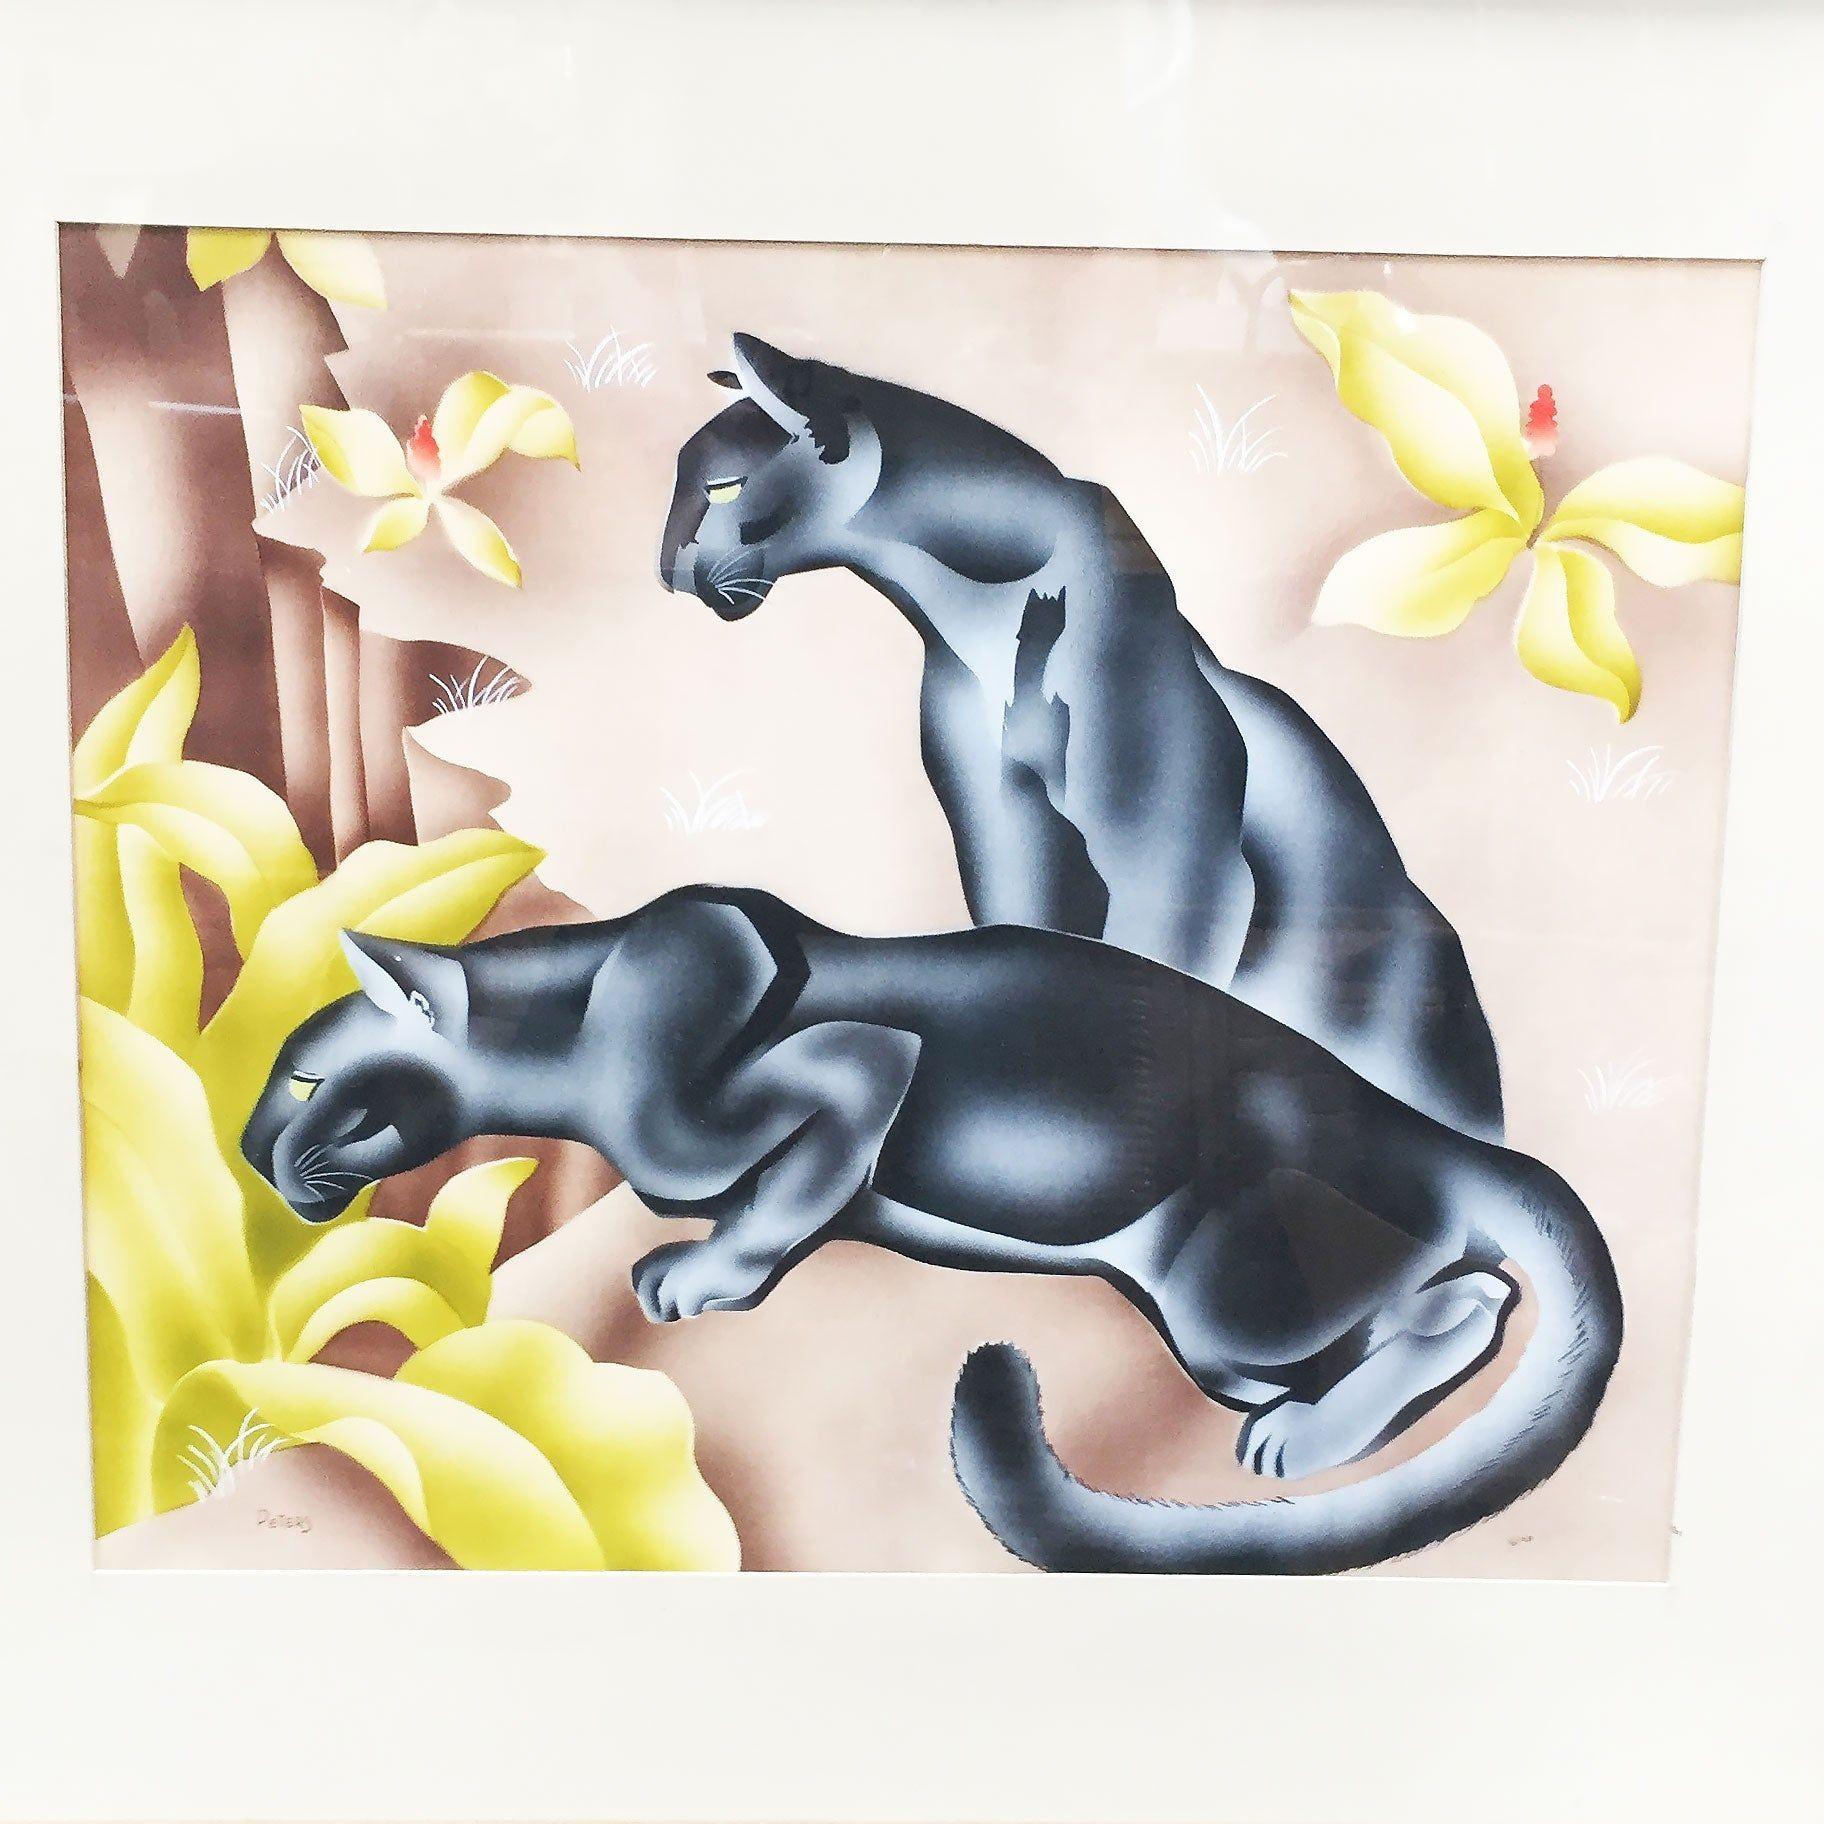 Mid-Century-Ära tropischen Airbrush Kunstwerk Aquarell Panther Malerei auf Papier. Unterschrieben Peters.

Maße: Rahmen 35